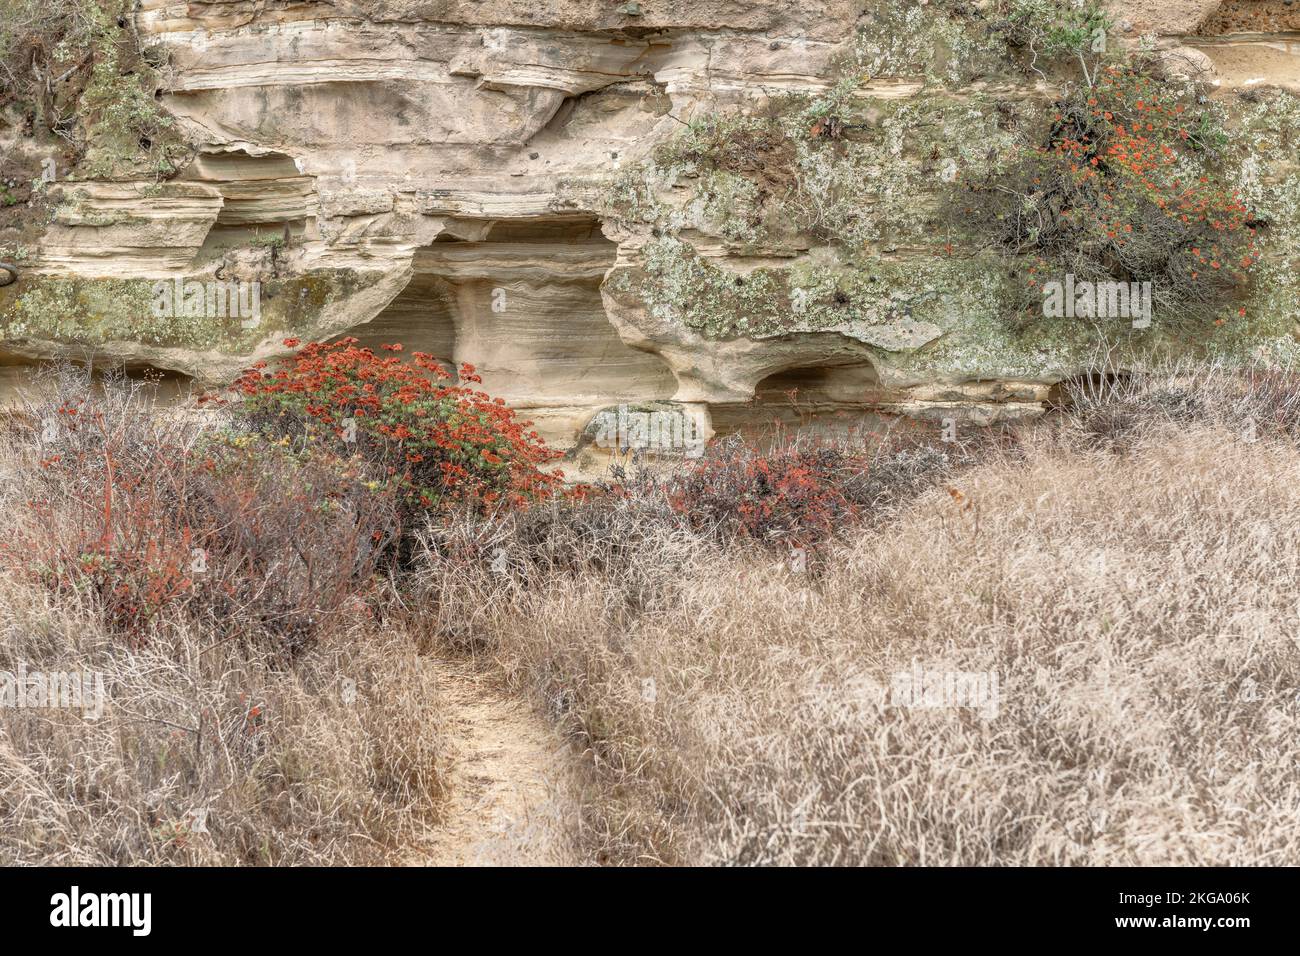 Una vista de un sendero que conduce a una hermosa formación de arenisca rodeada de plantas y hierba. Foto de stock